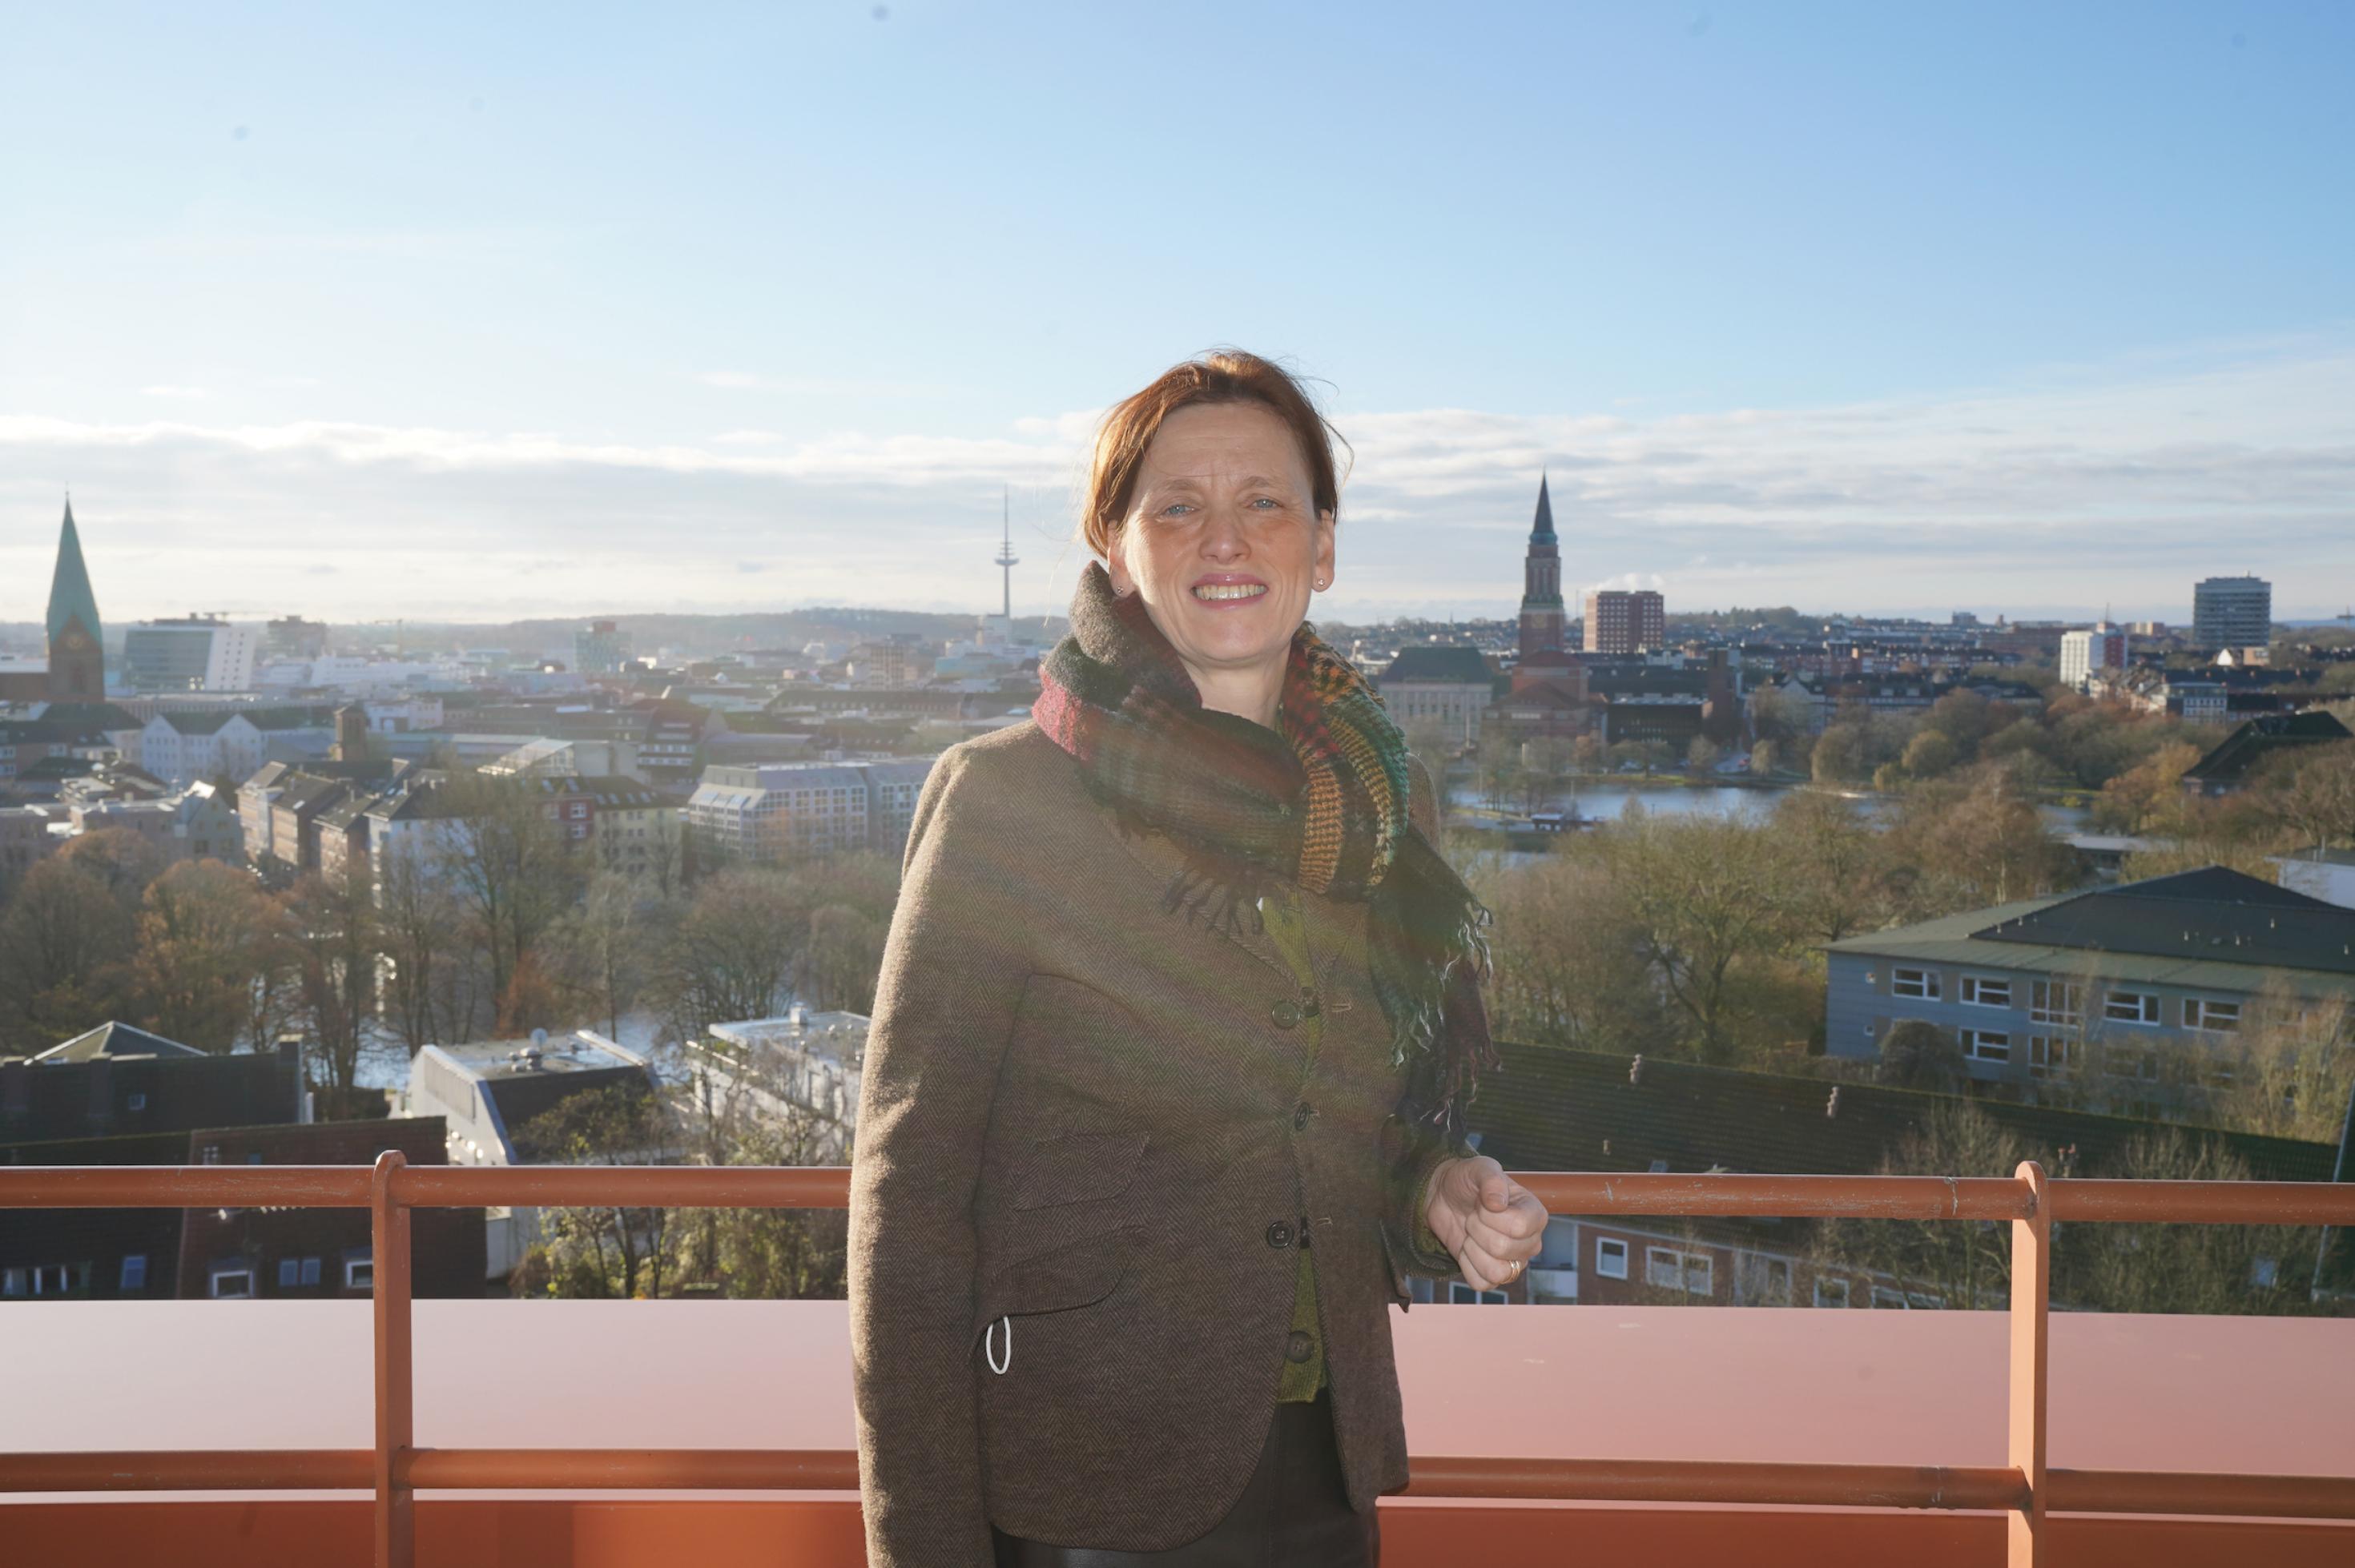 Karin Prien, eine Frau mit rotbraunen Haaren steht auf einer Dachterasse mit weitem Ausblick über Kiel. Man sieht zwei Kirchtürme.